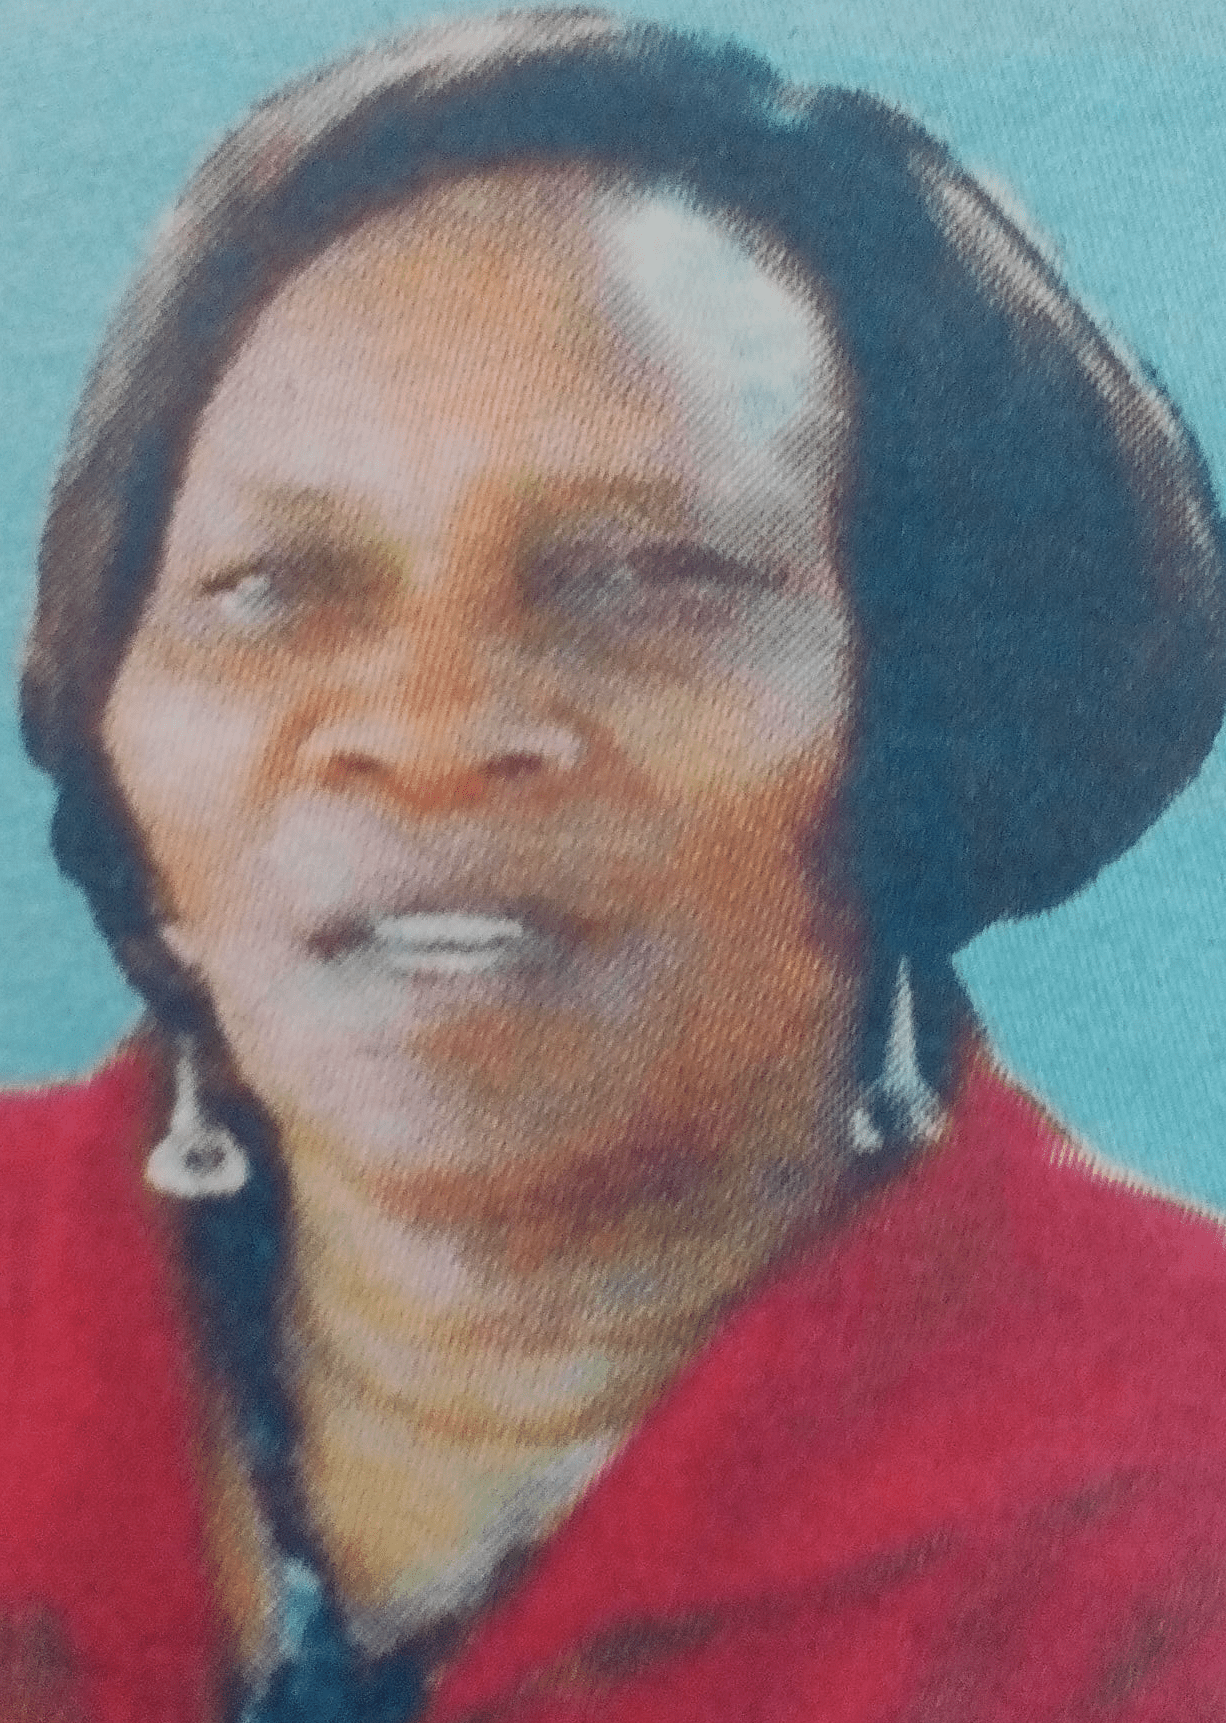 Obituary Image of Joyce Wambui Githitu